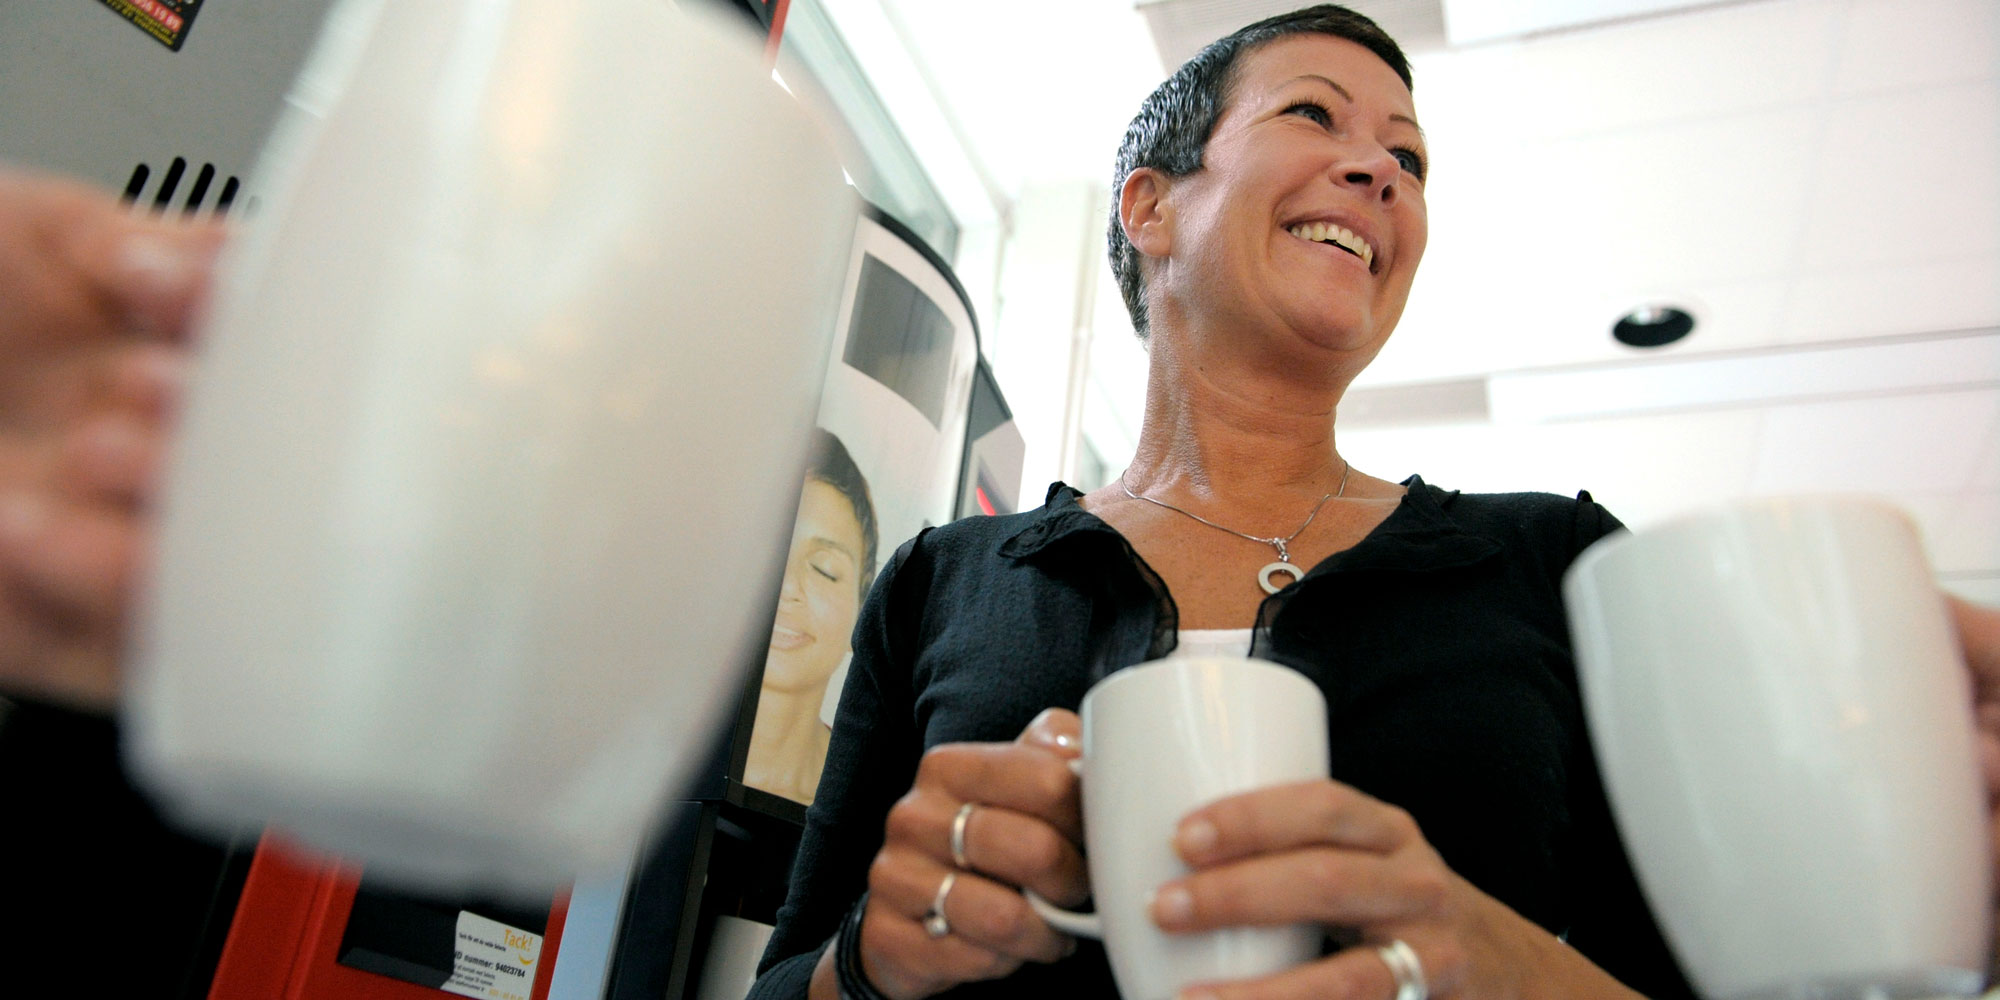 Leende kvinna med kaffemugg. Runt henne flera andra kaffemuggar som hålls av händer.